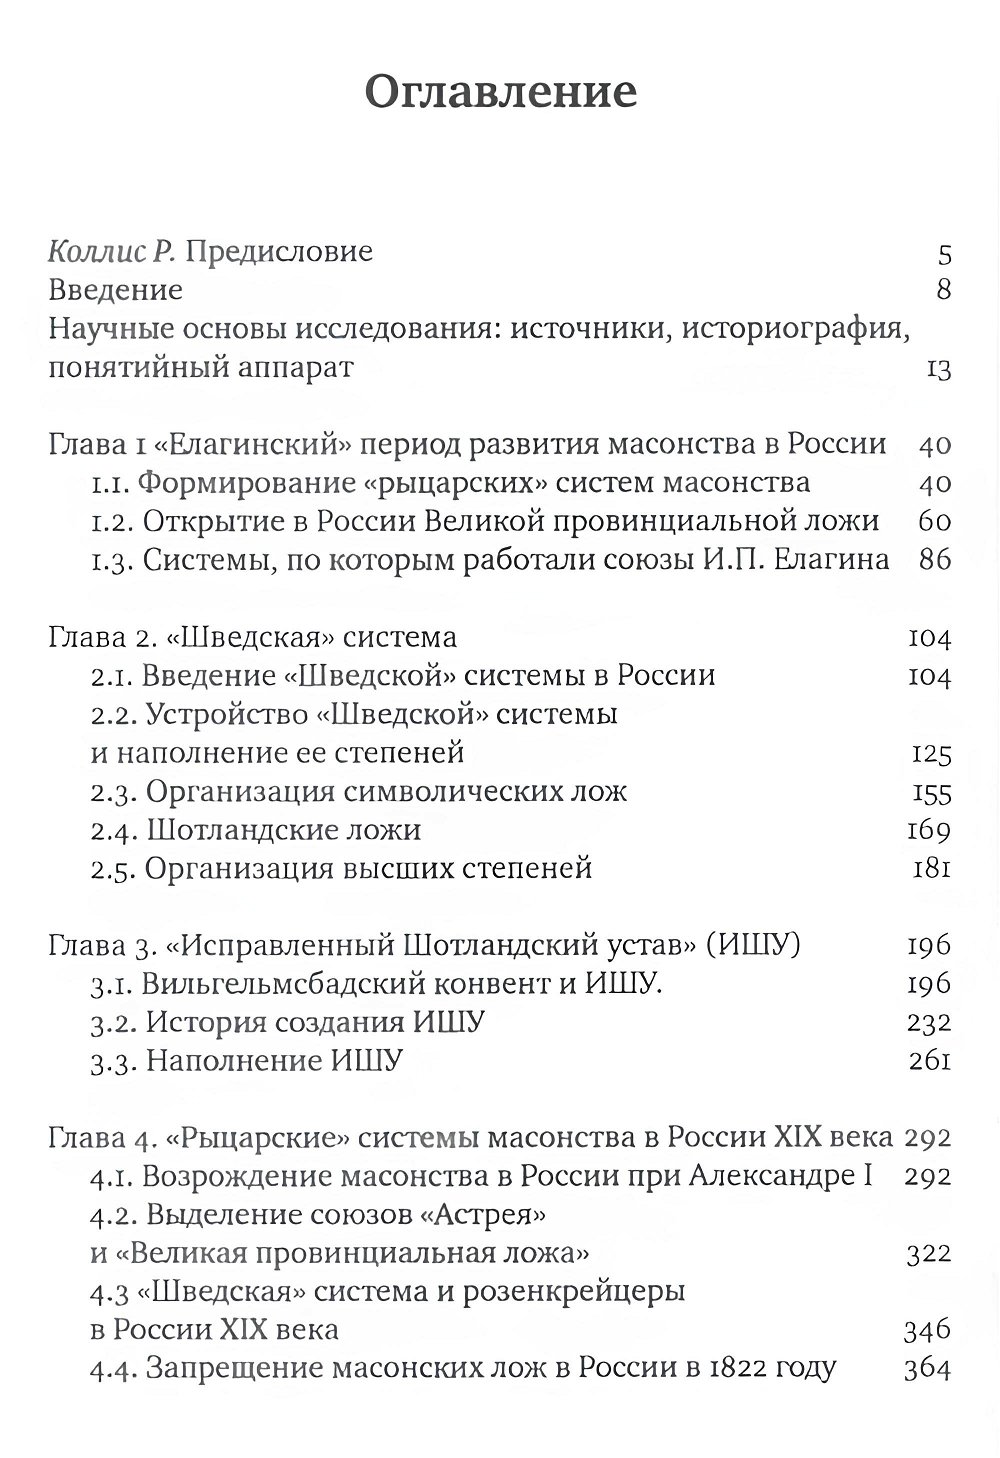 ""Рыцарские" системы масонства в России: 1772–1822" 